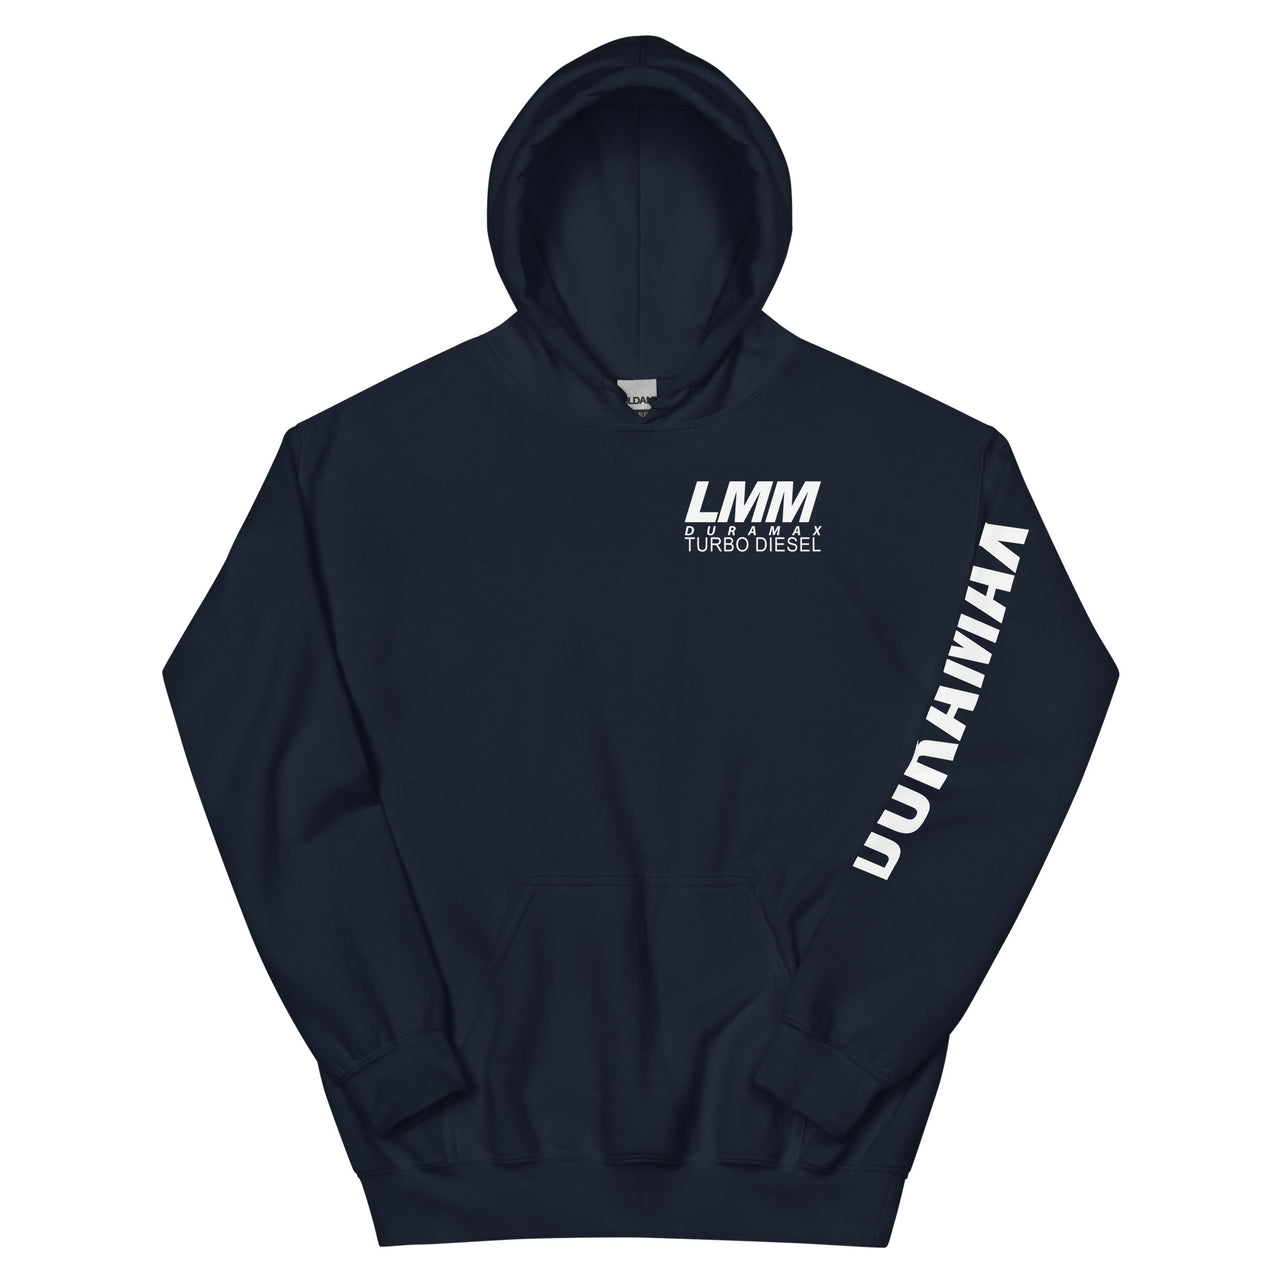 LMM Duramax Hoodie Pullover Sweatshirt With Sleeve Print in navy